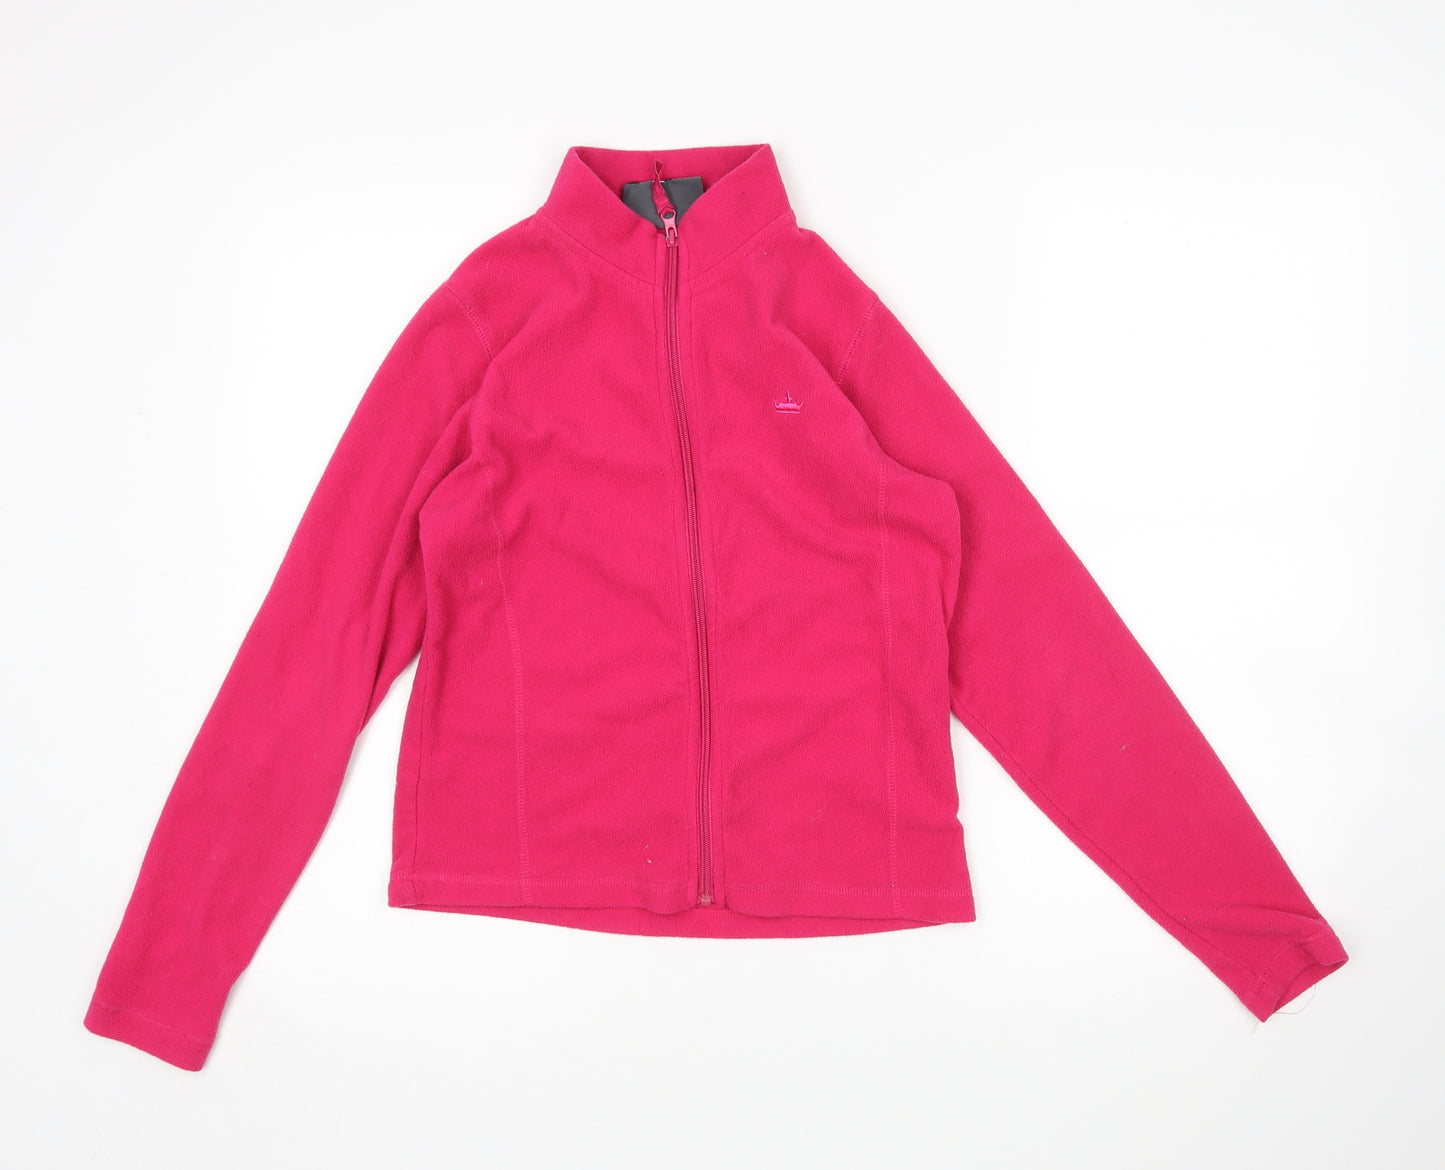 Miss Fiori Girls Pink   Full Zip Sweatshirt Size 13 Years